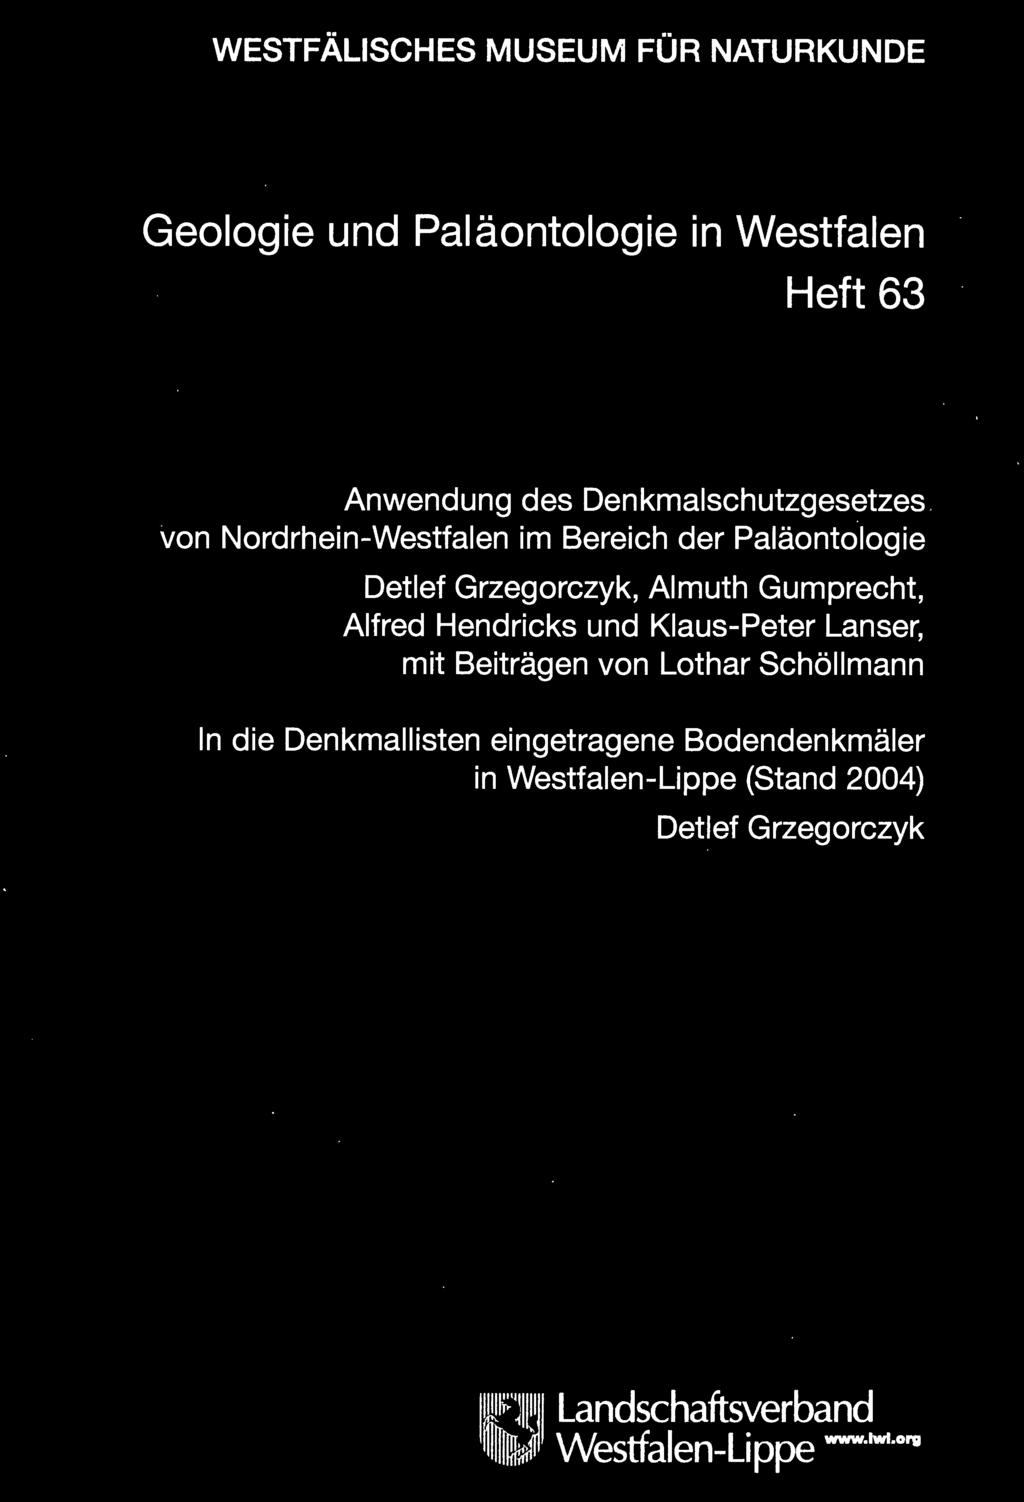 Gumprecht, Alfred Hendricks und Klaus-Peter Lanser, mit Beiträgen von Lothar Schöllmann In die Denkmallisten